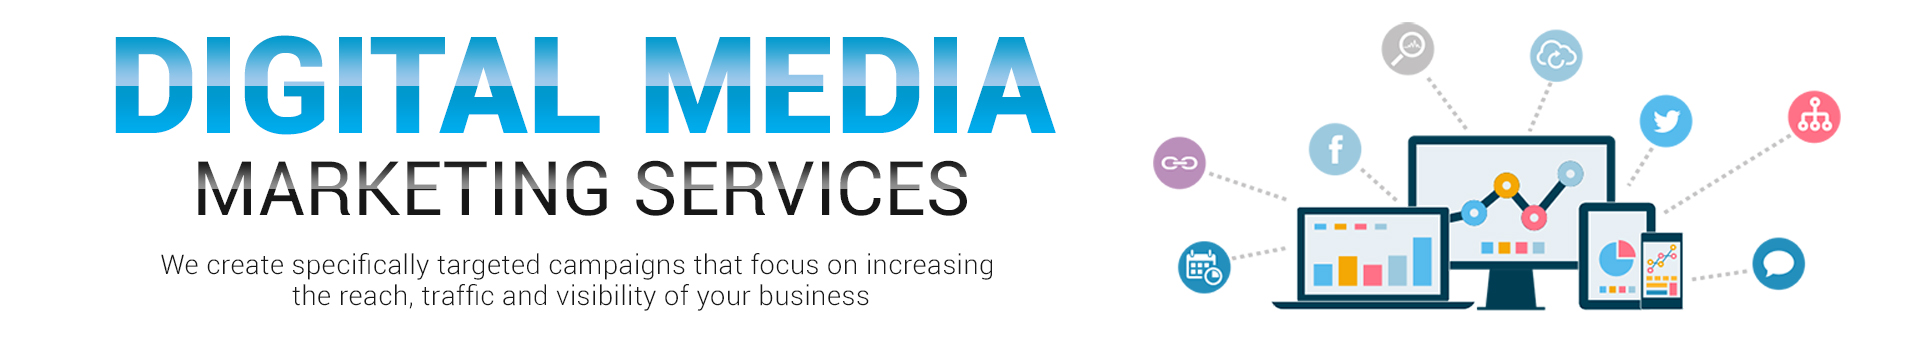 Digital Media Marketing Services | Quick Reach Media